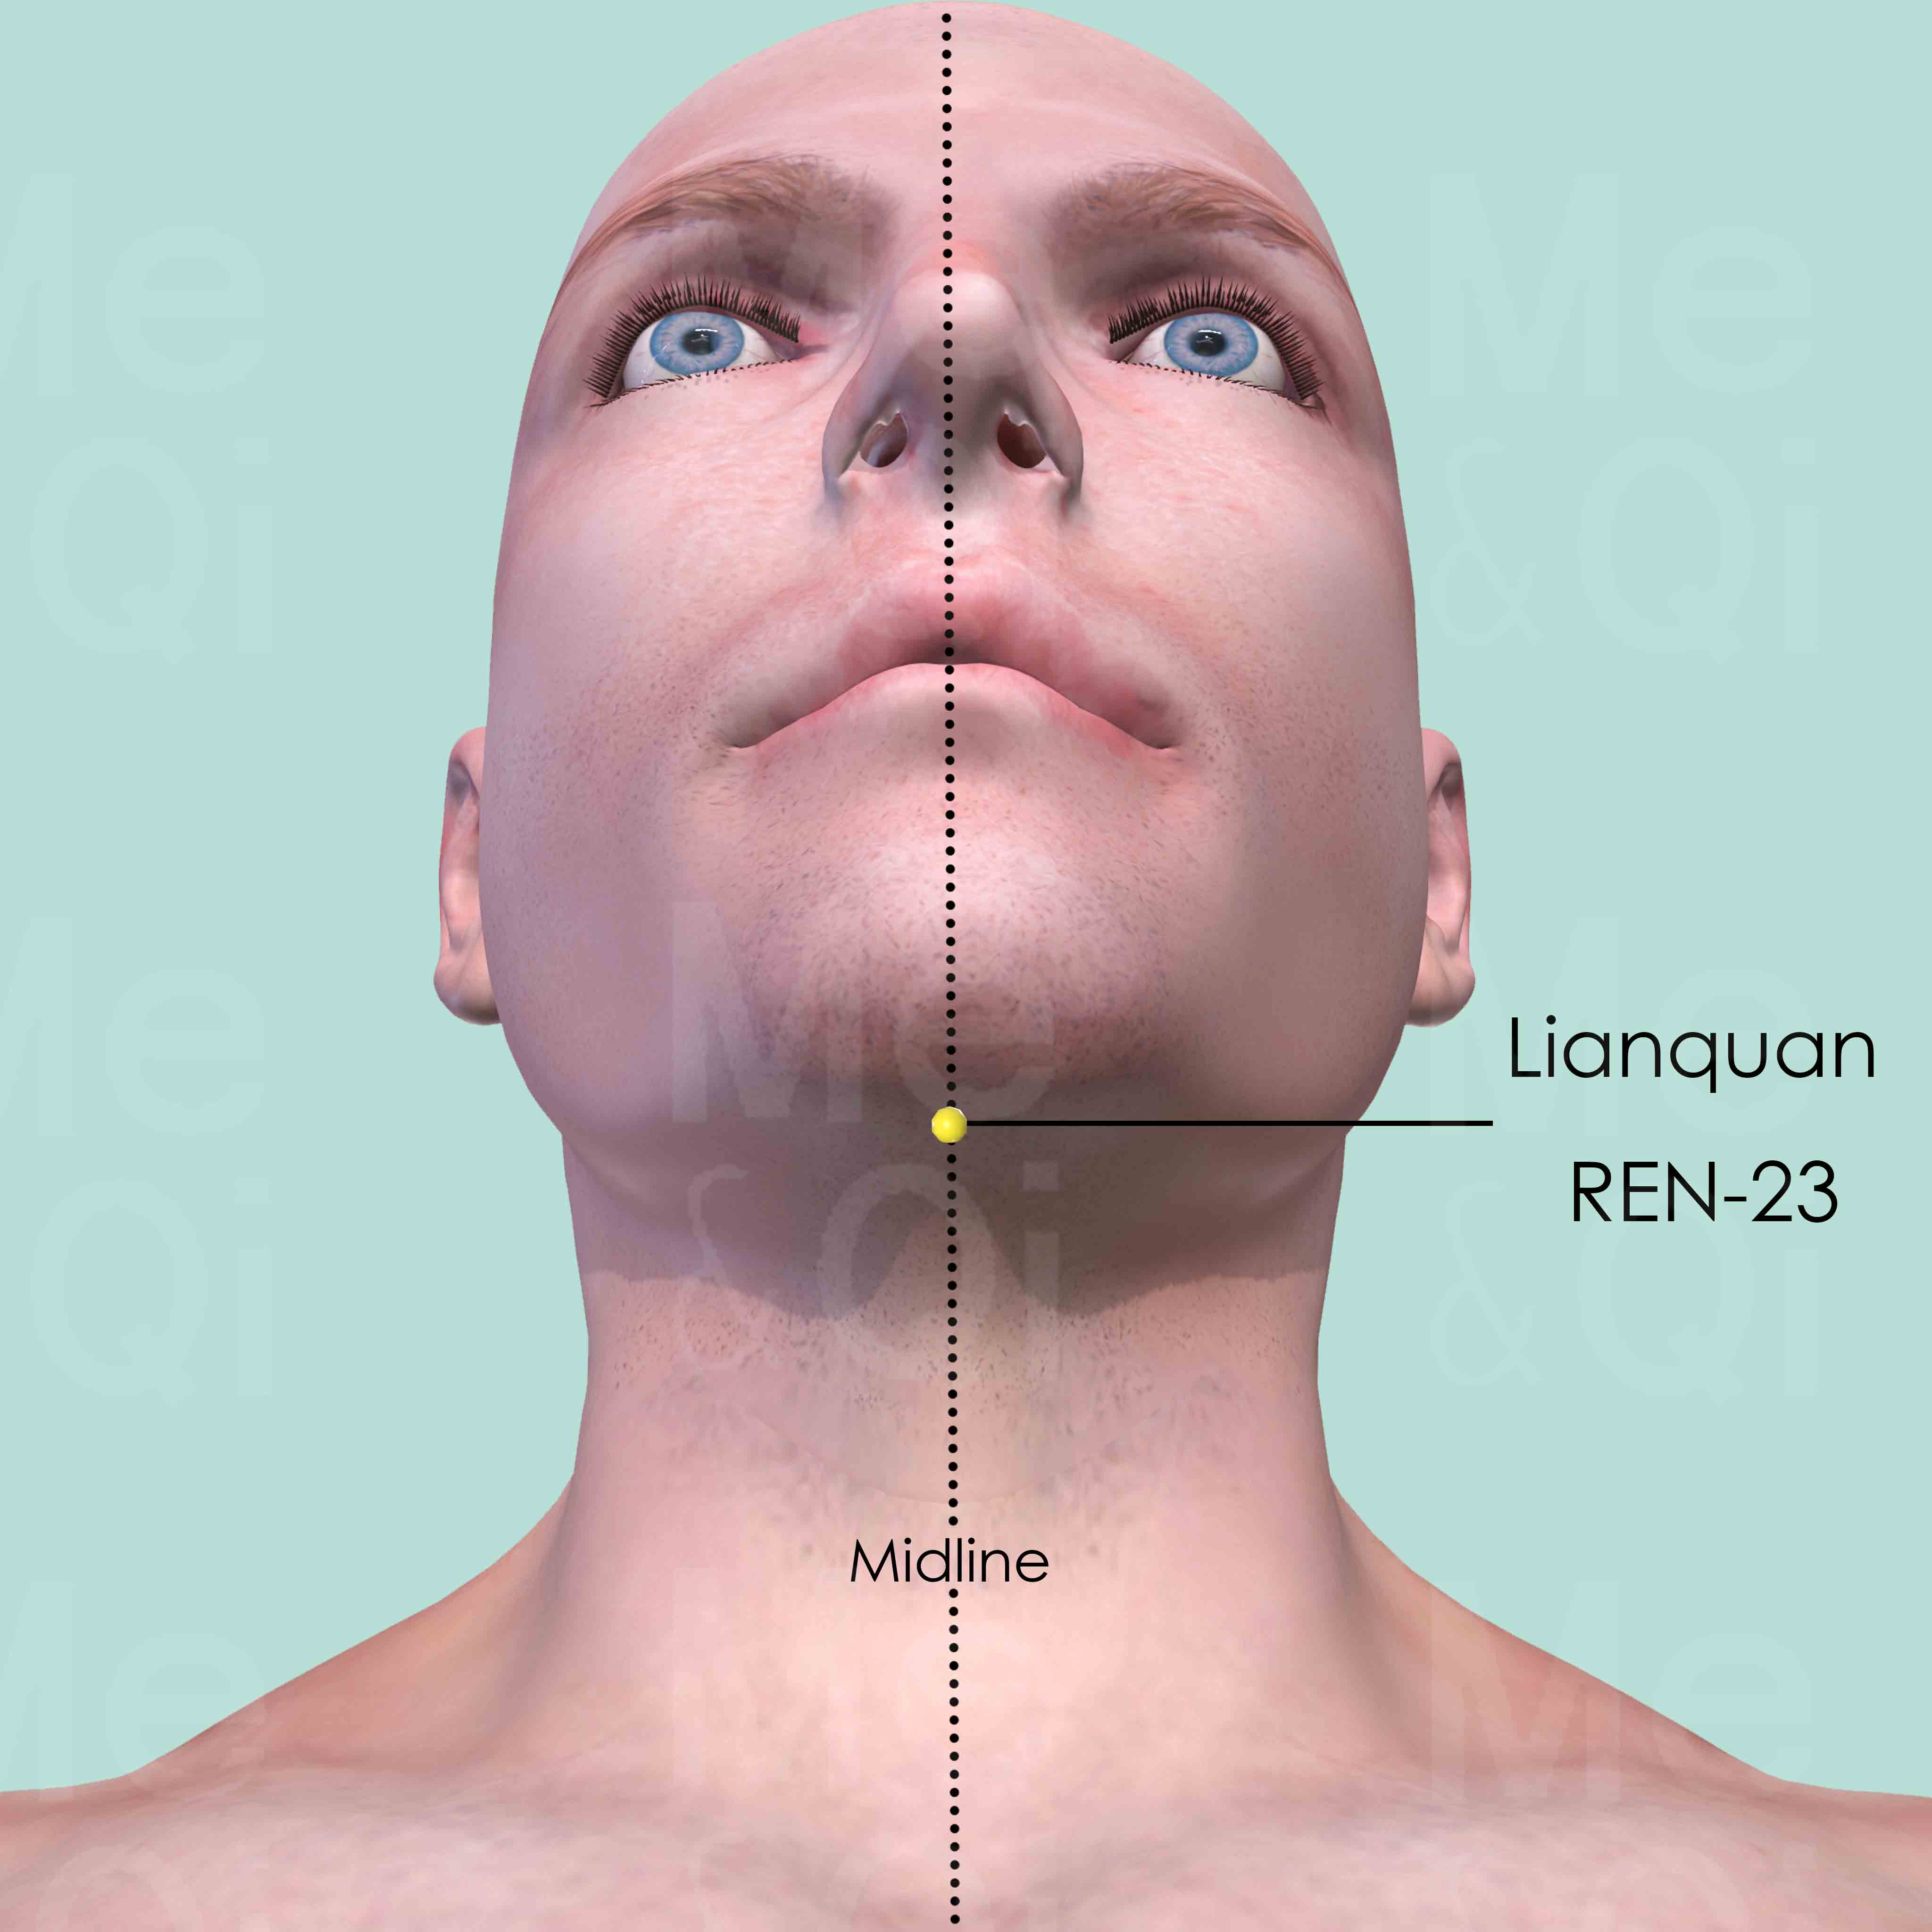 Lianquan REN-23